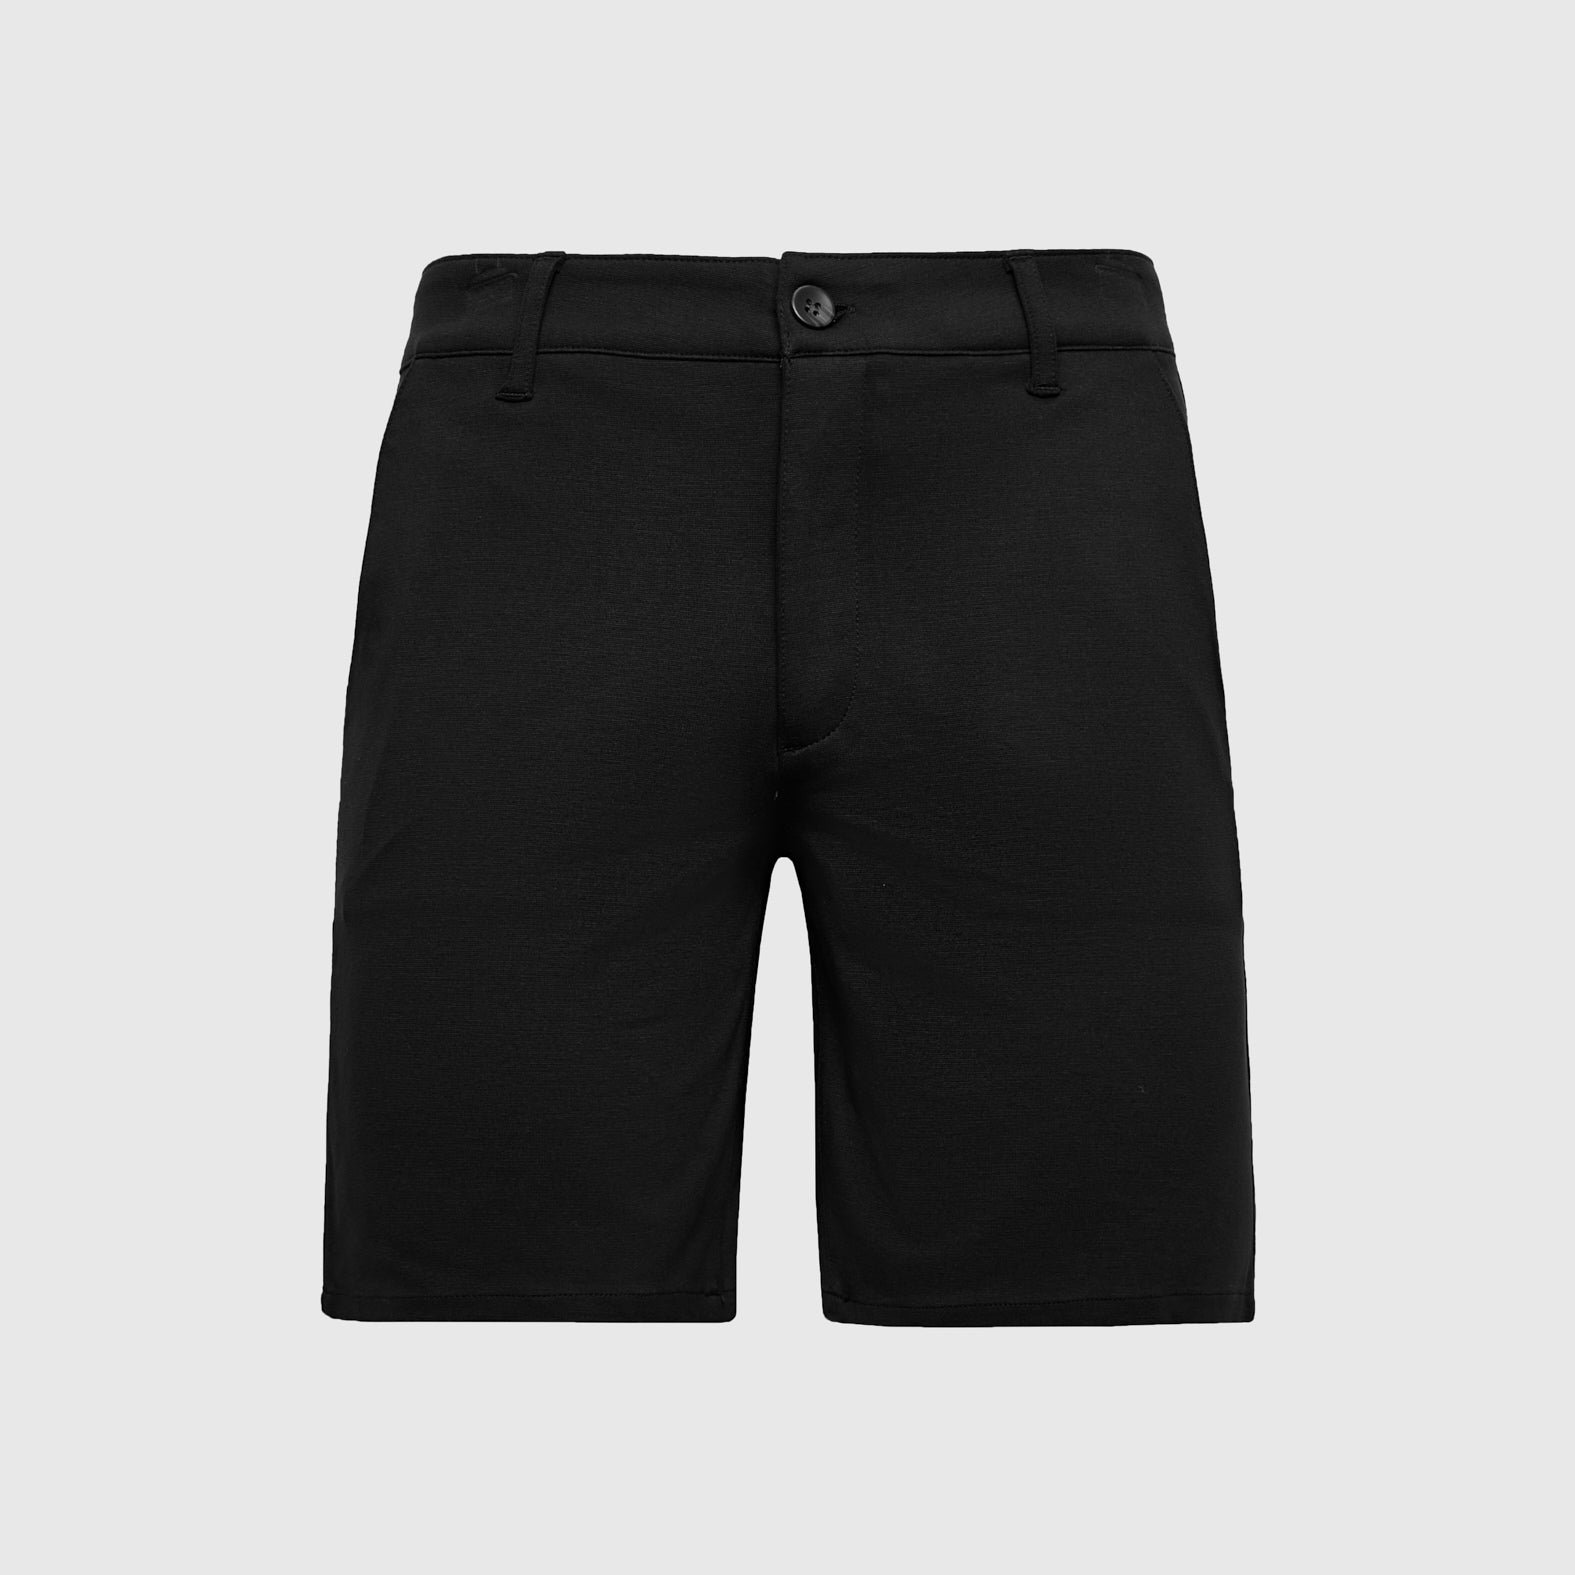 9.5" Black Comfort Chino Short